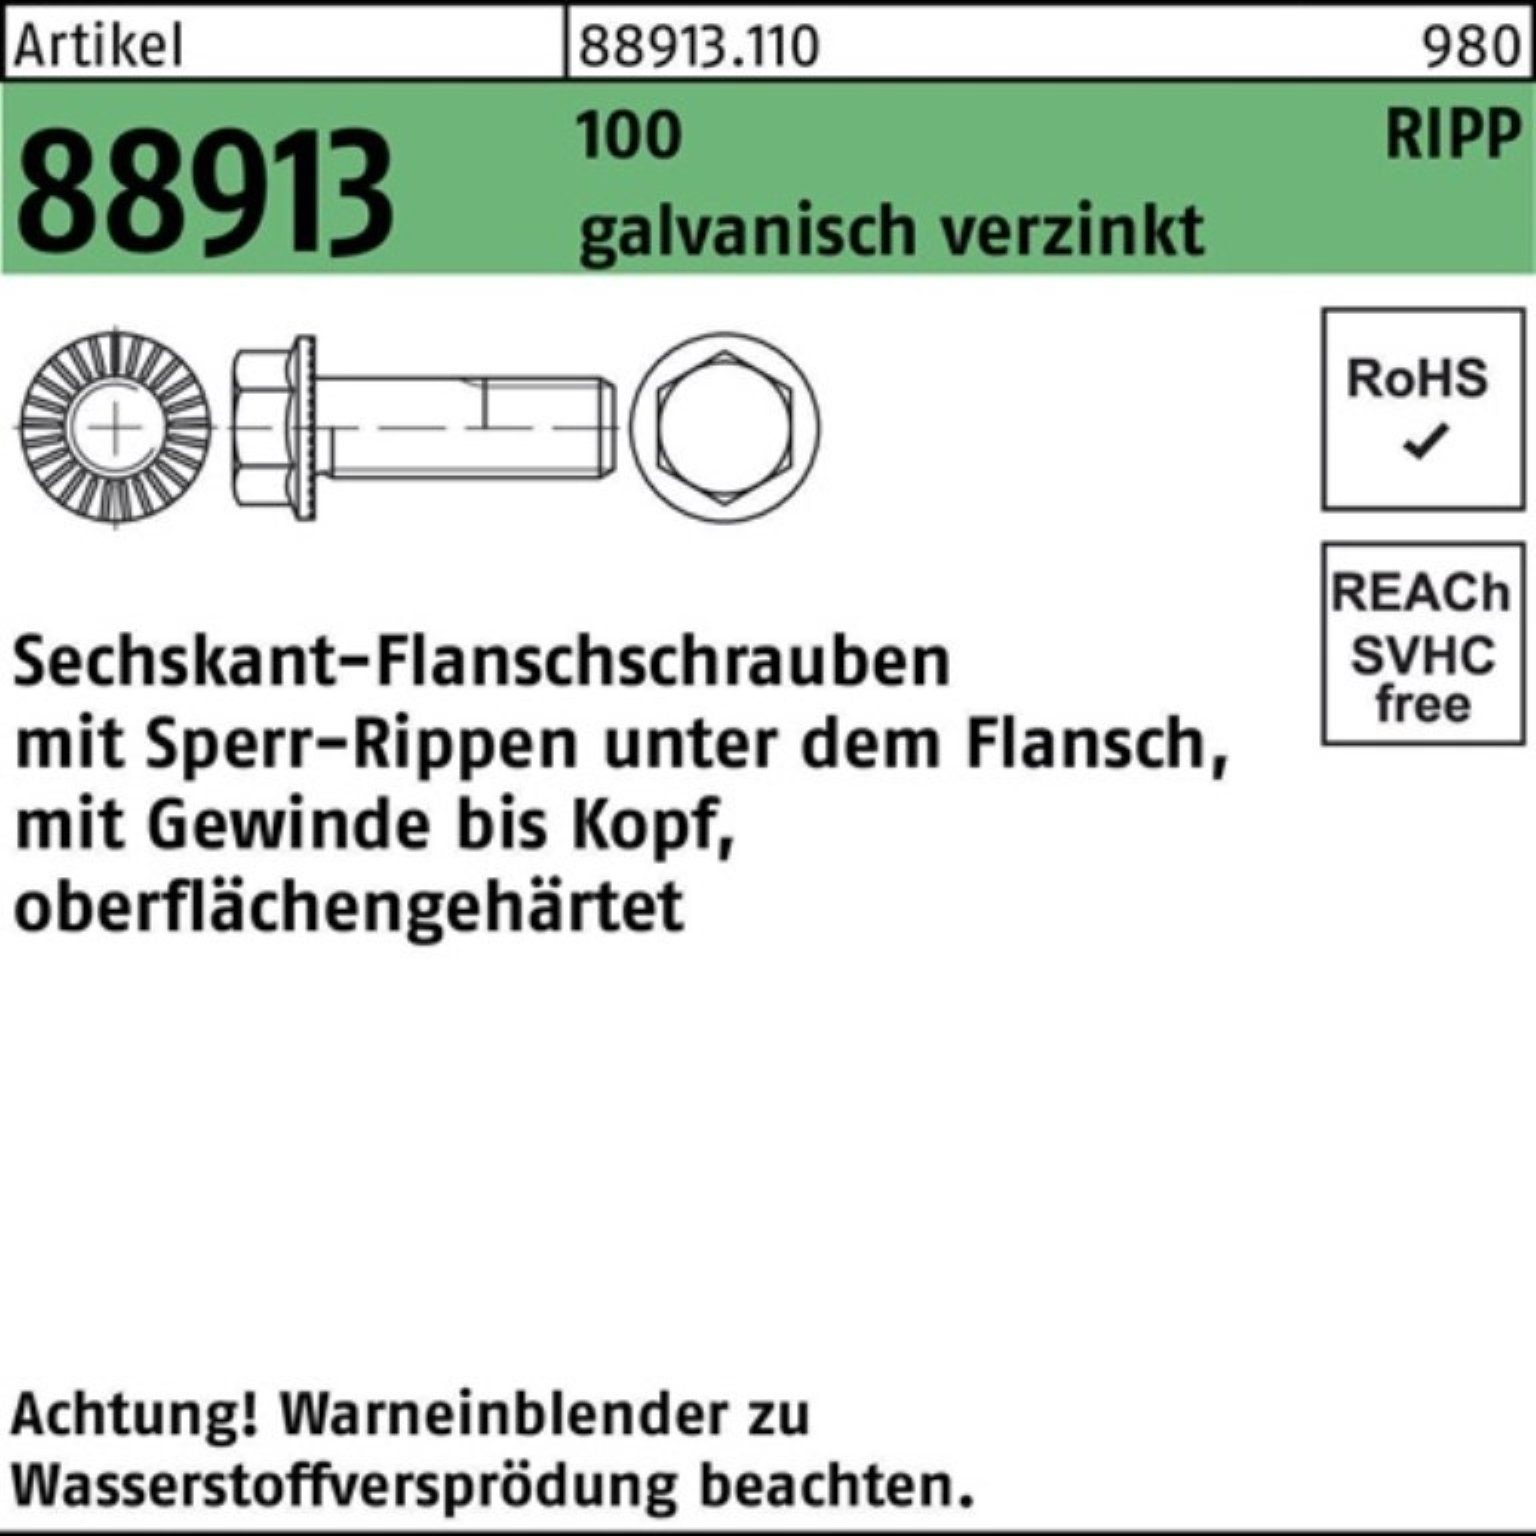 Sperr-Ripp 100 VG R Schraube 100er Sechskantflanschschraube 88913 M12x75 Reyher Pack g